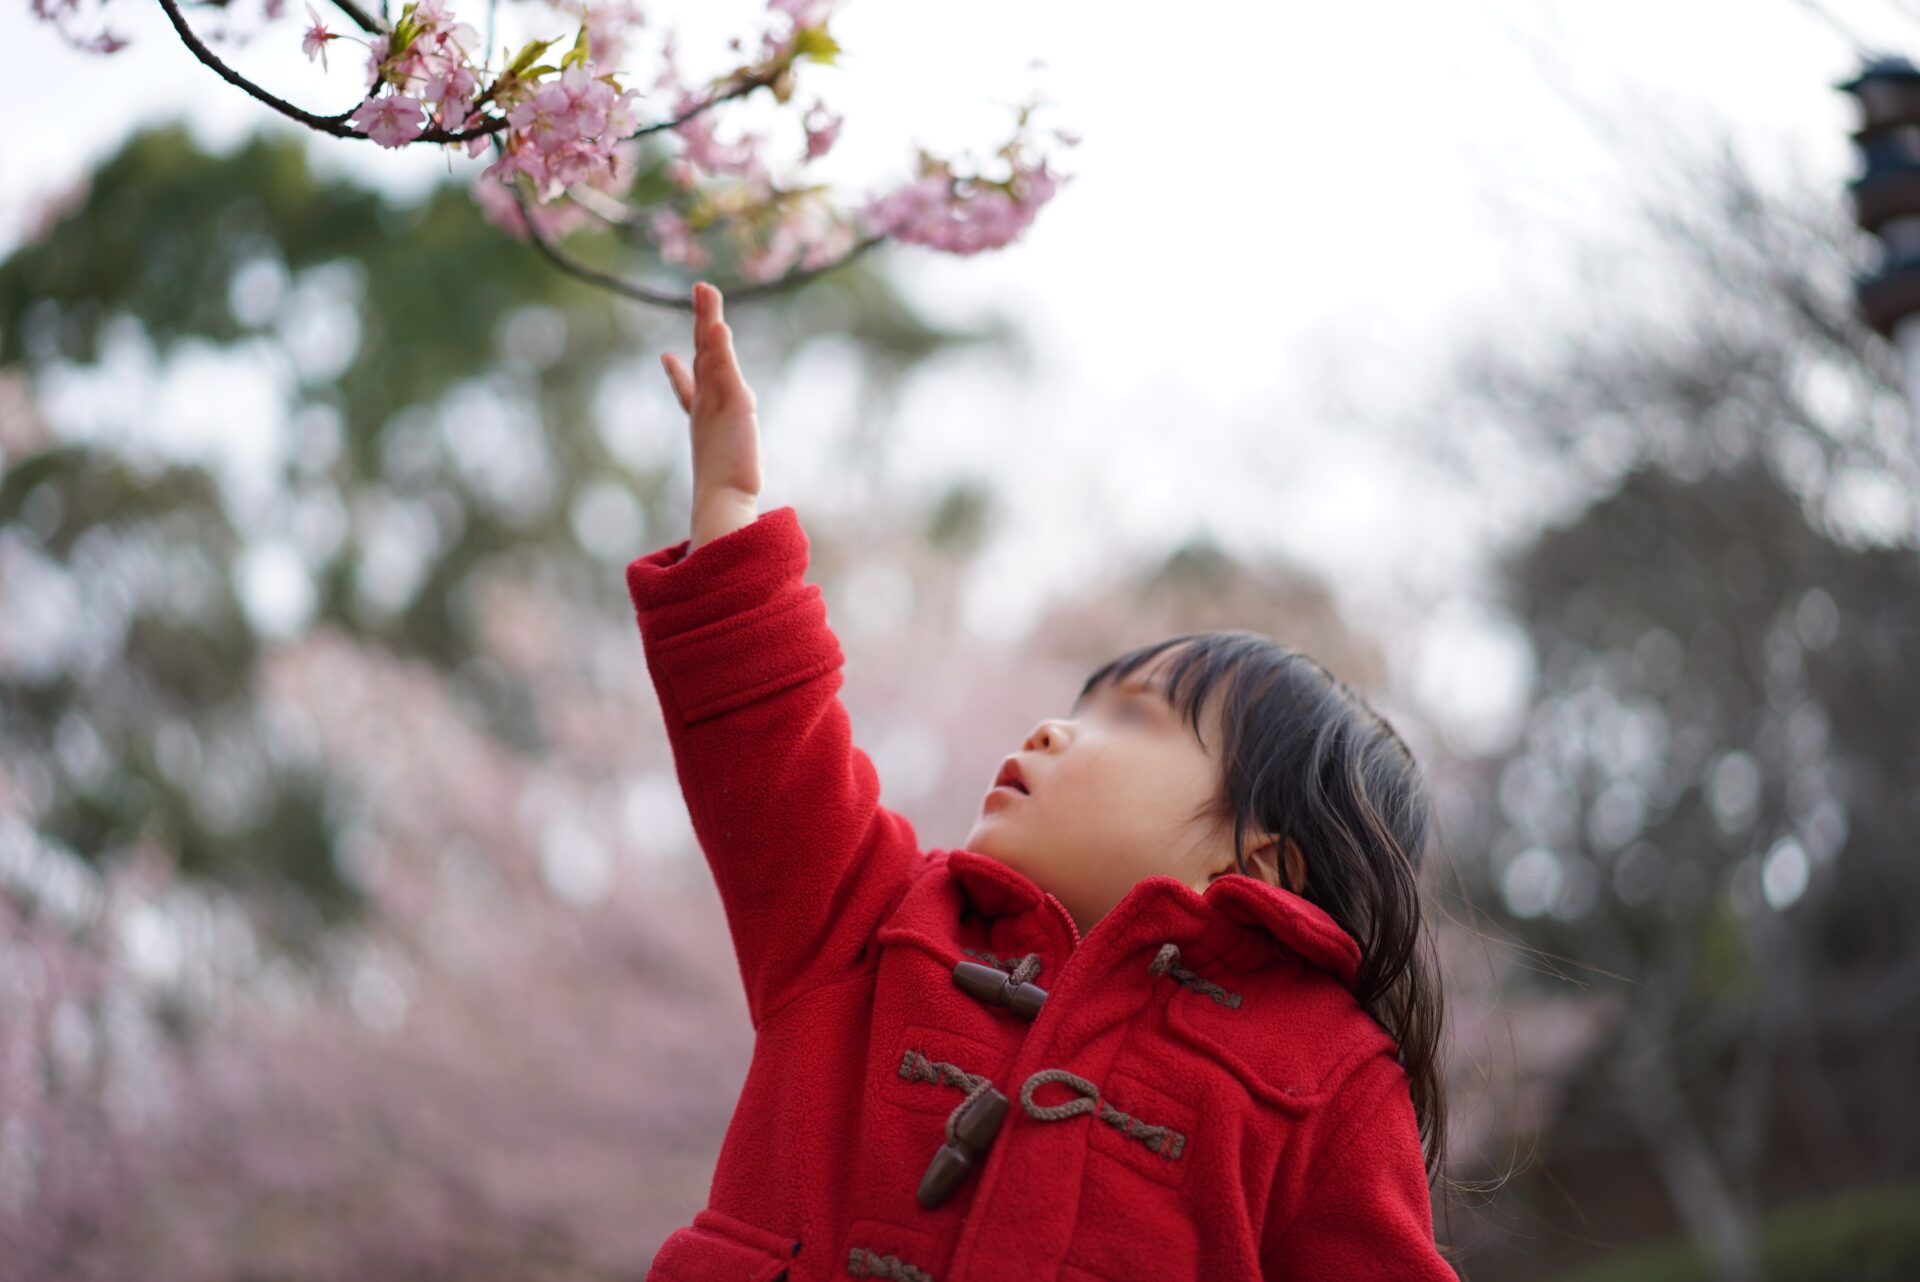 桜と子供の撮影で低い桜に手を伸ばす写真